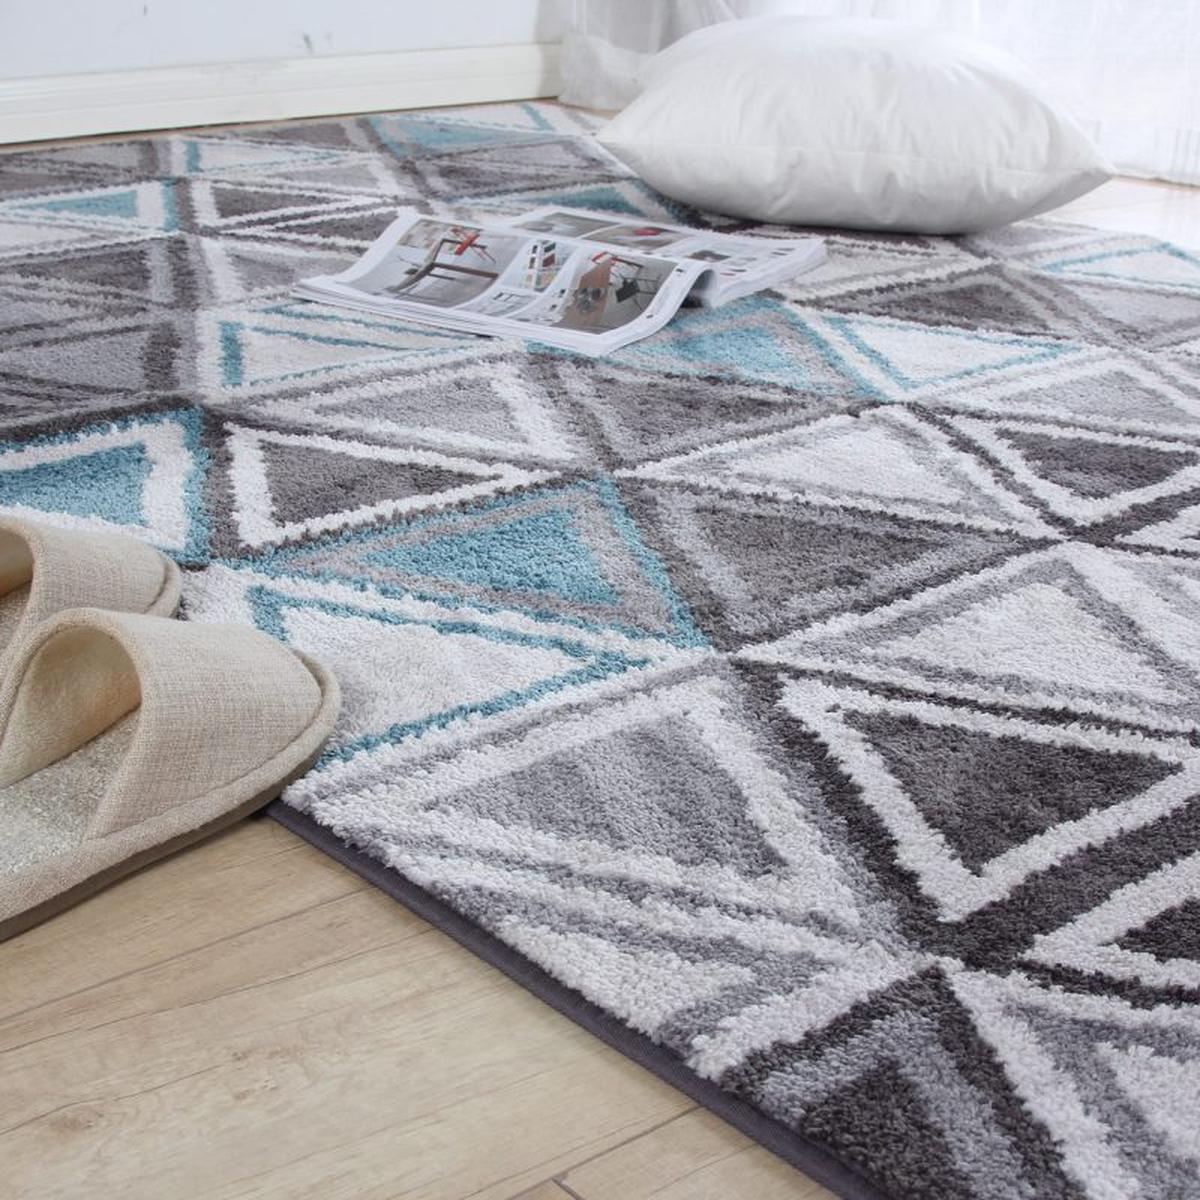 Cómo quitar manchas la alfombra con sencillos trucos caseros | Limpieza | Hogar nnda | nnni | RESPUESTAS | TROME.COM